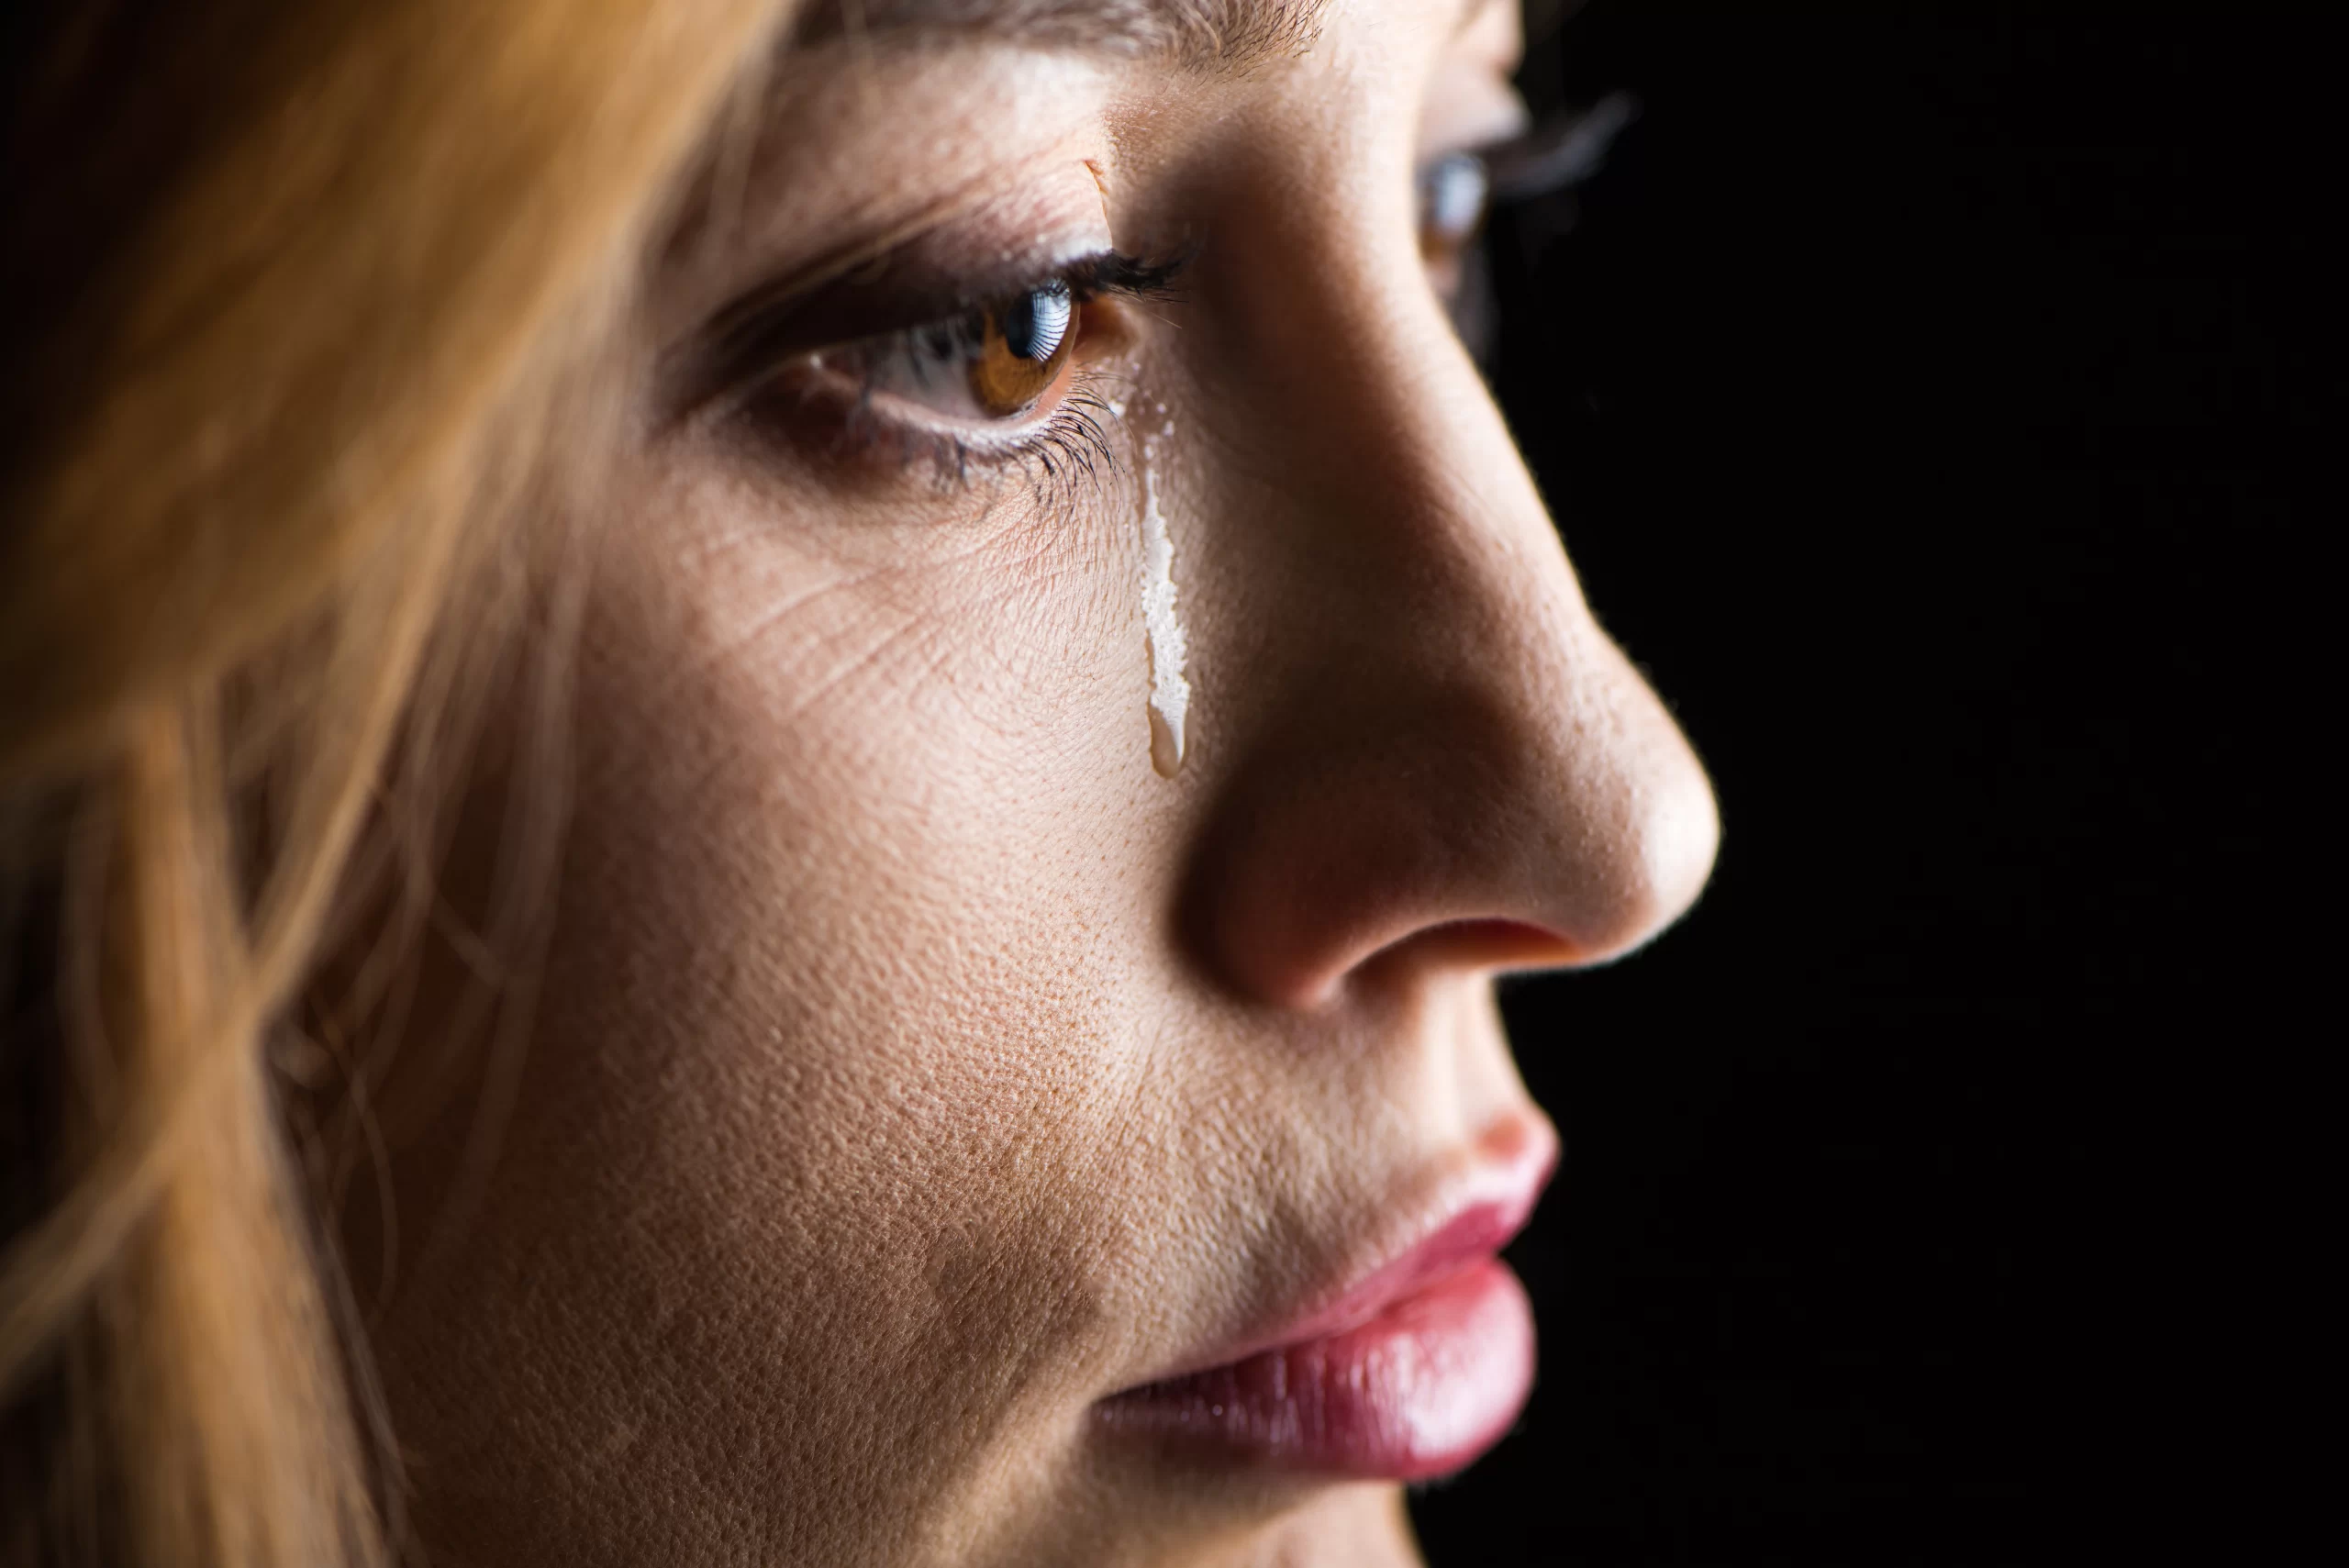 victima de violencia domestica llorando